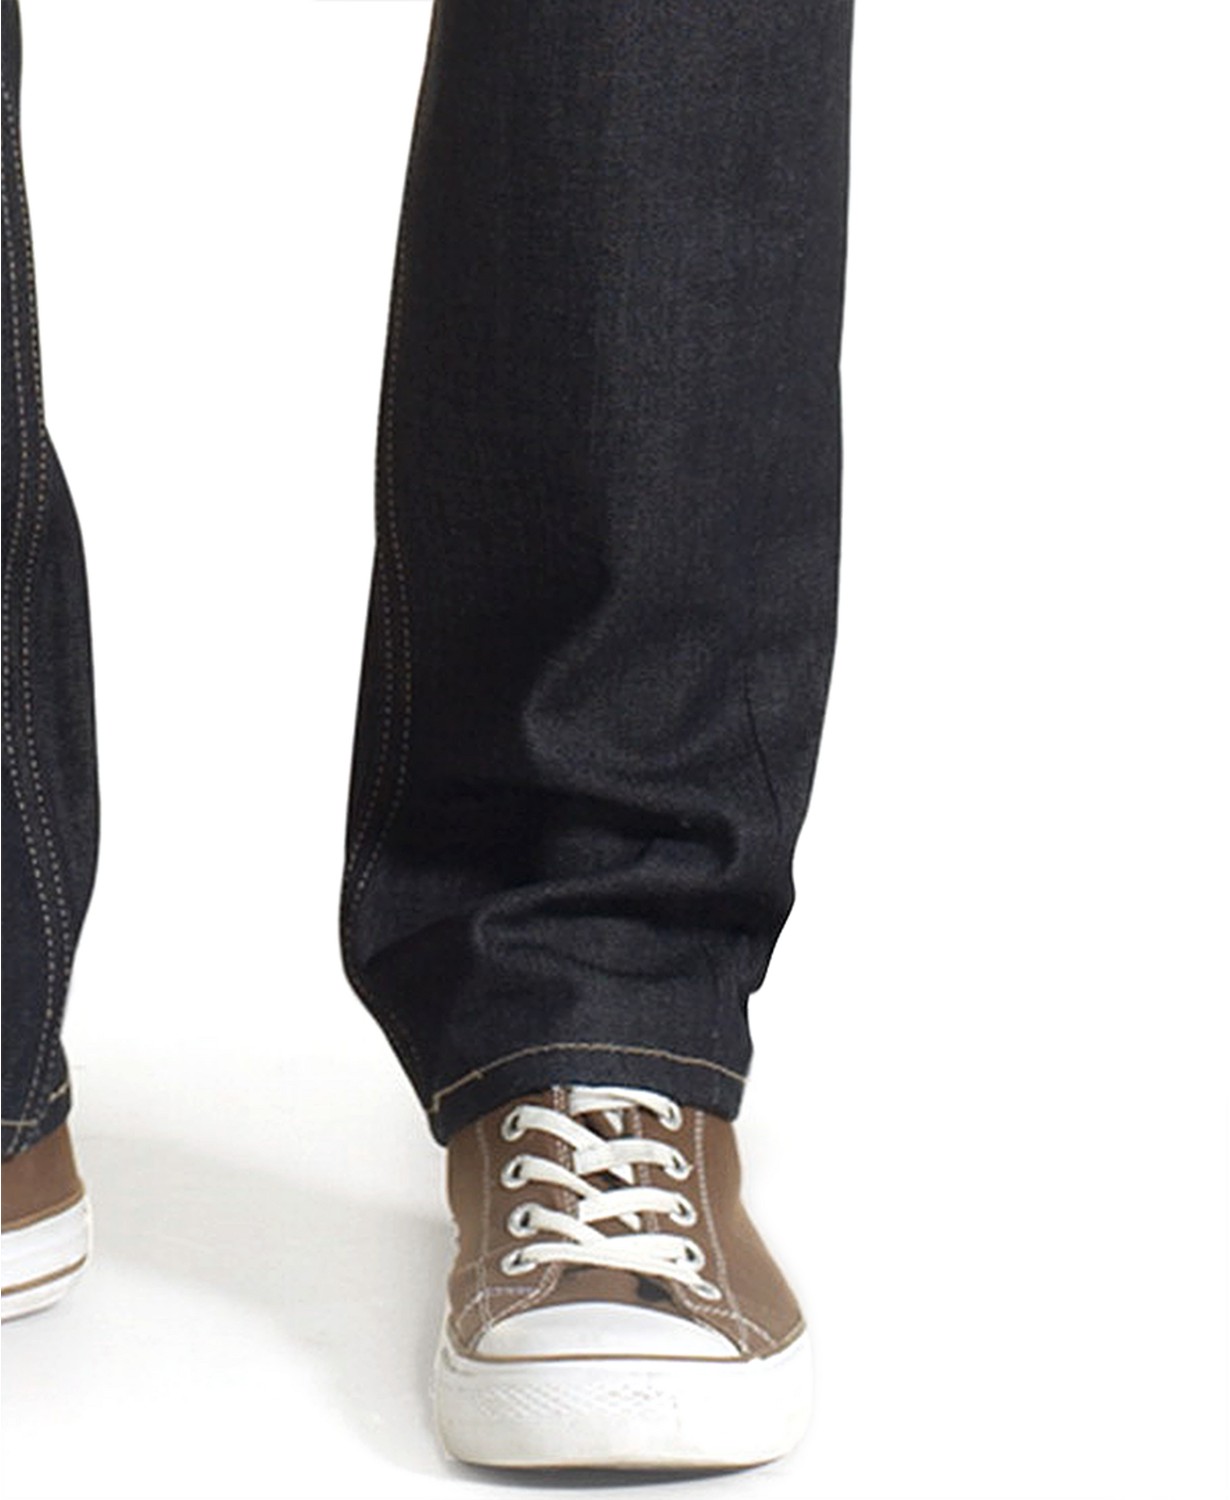 www.couturepoint.com-levis-mens-black-511-slim-fit-jeans